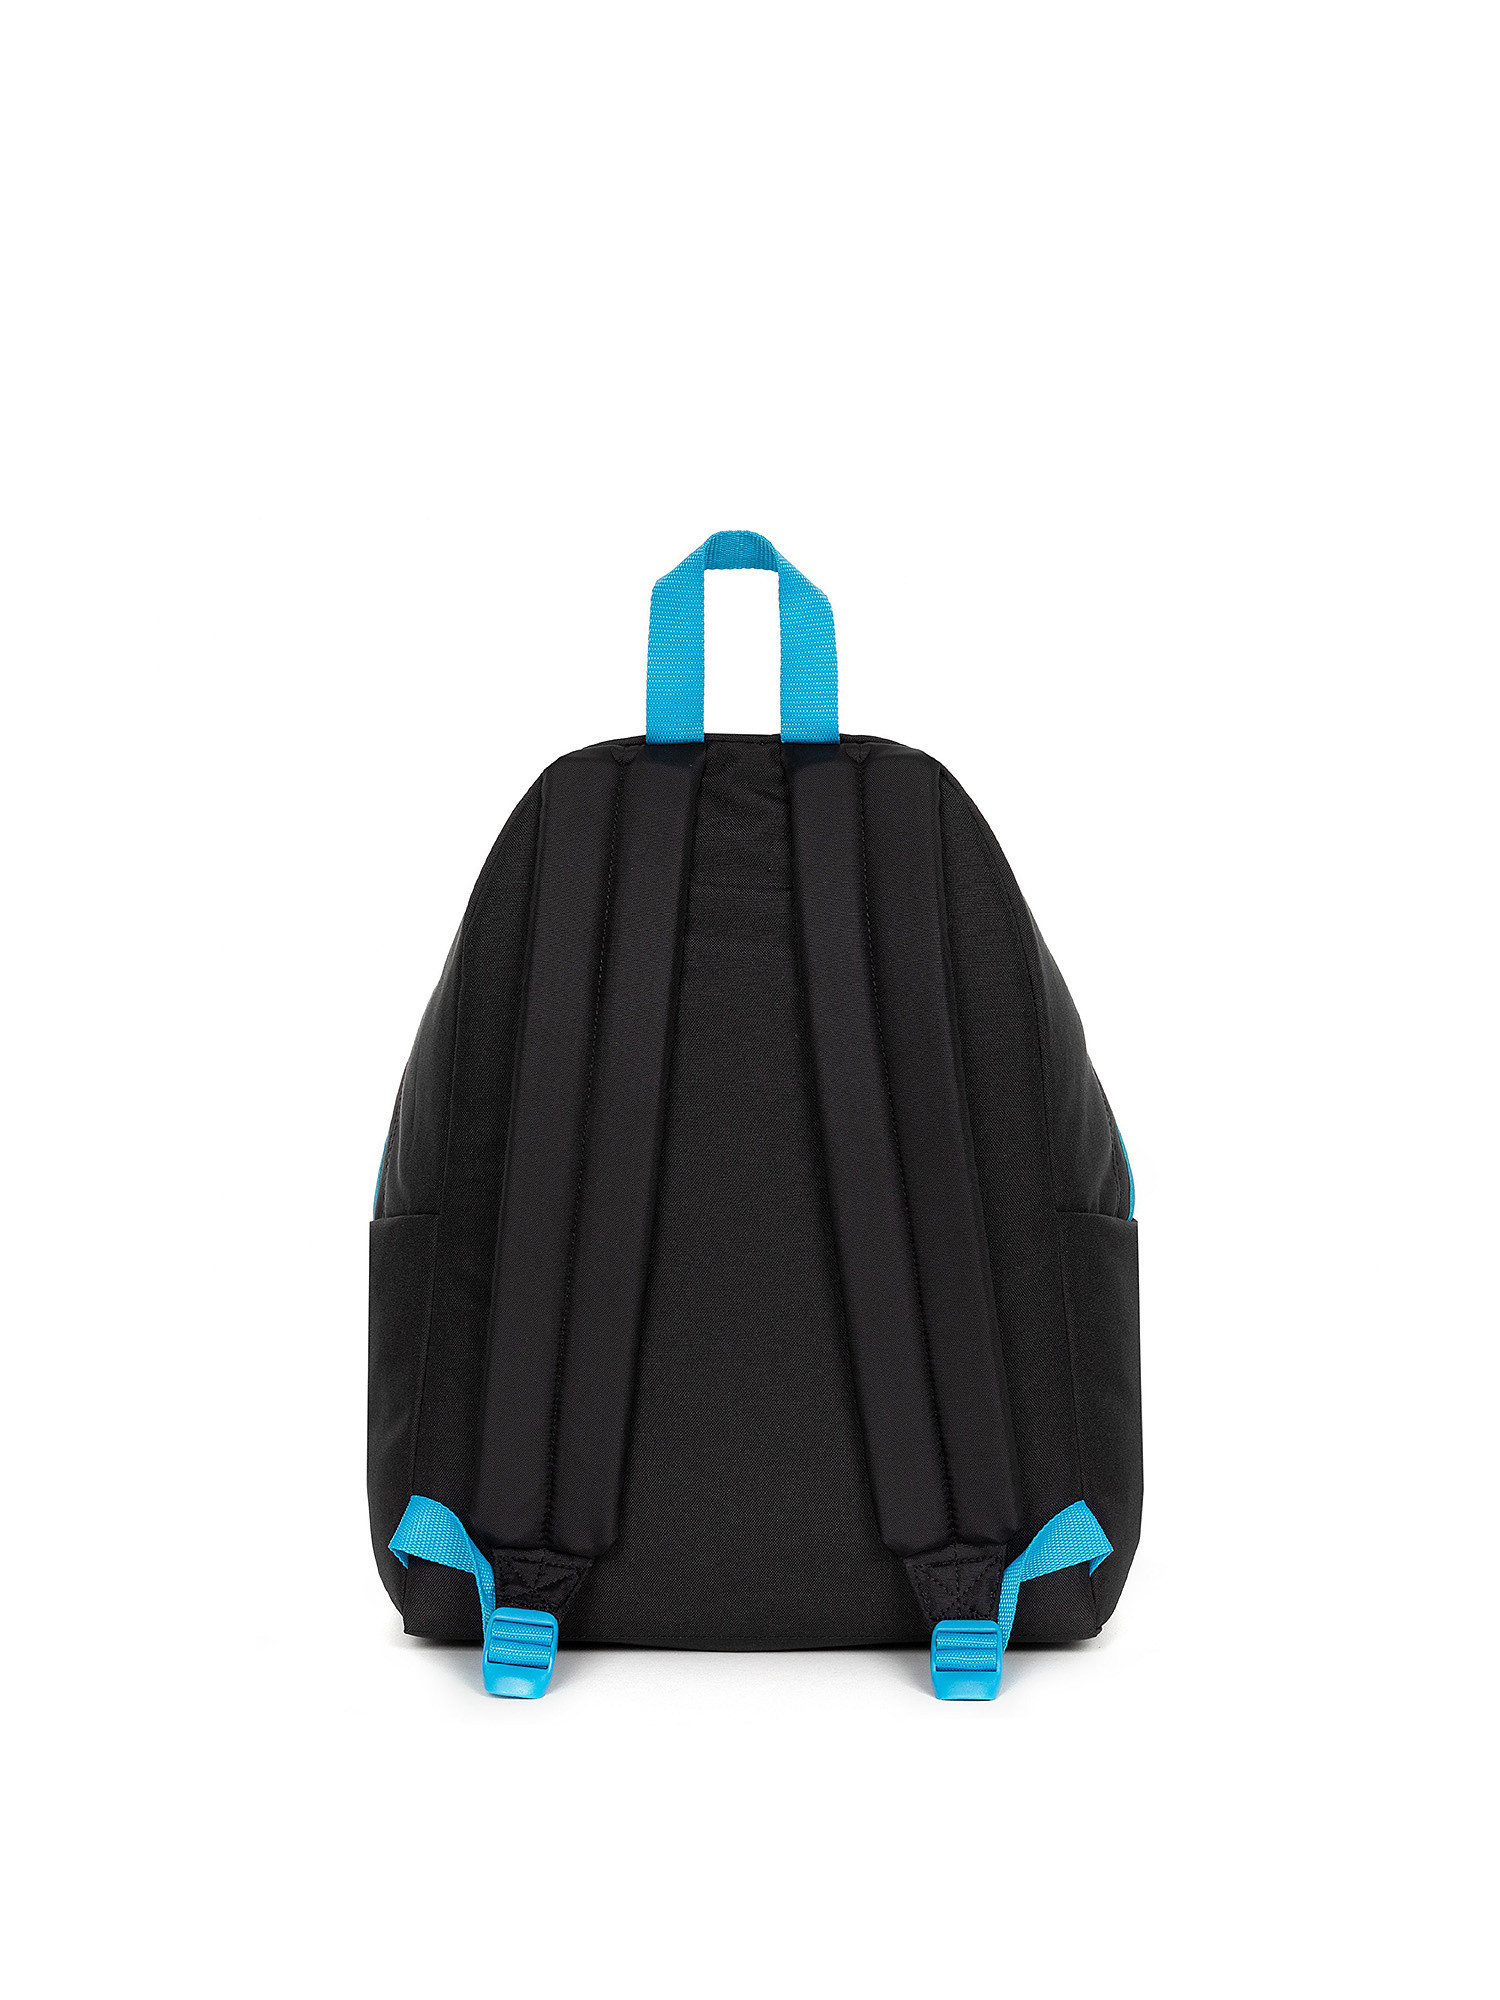 Eastpak - Padded Pak'r Backpack Contrastgrblue, Black, large image number 2